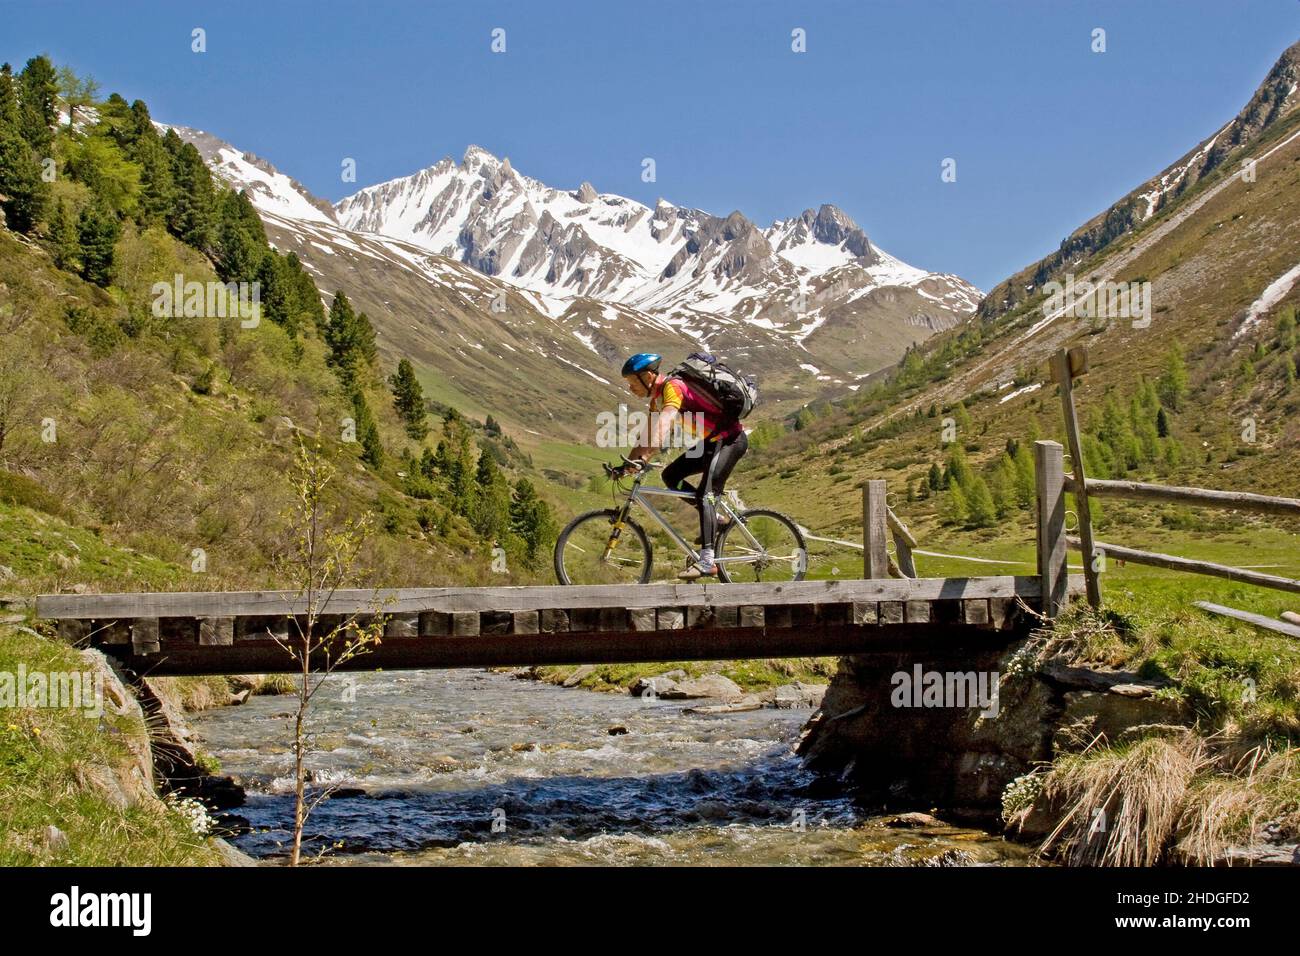 european alps, bicycle tour, mountain biking, bicycle tours, bike tour, mountainbiking Stock Photo